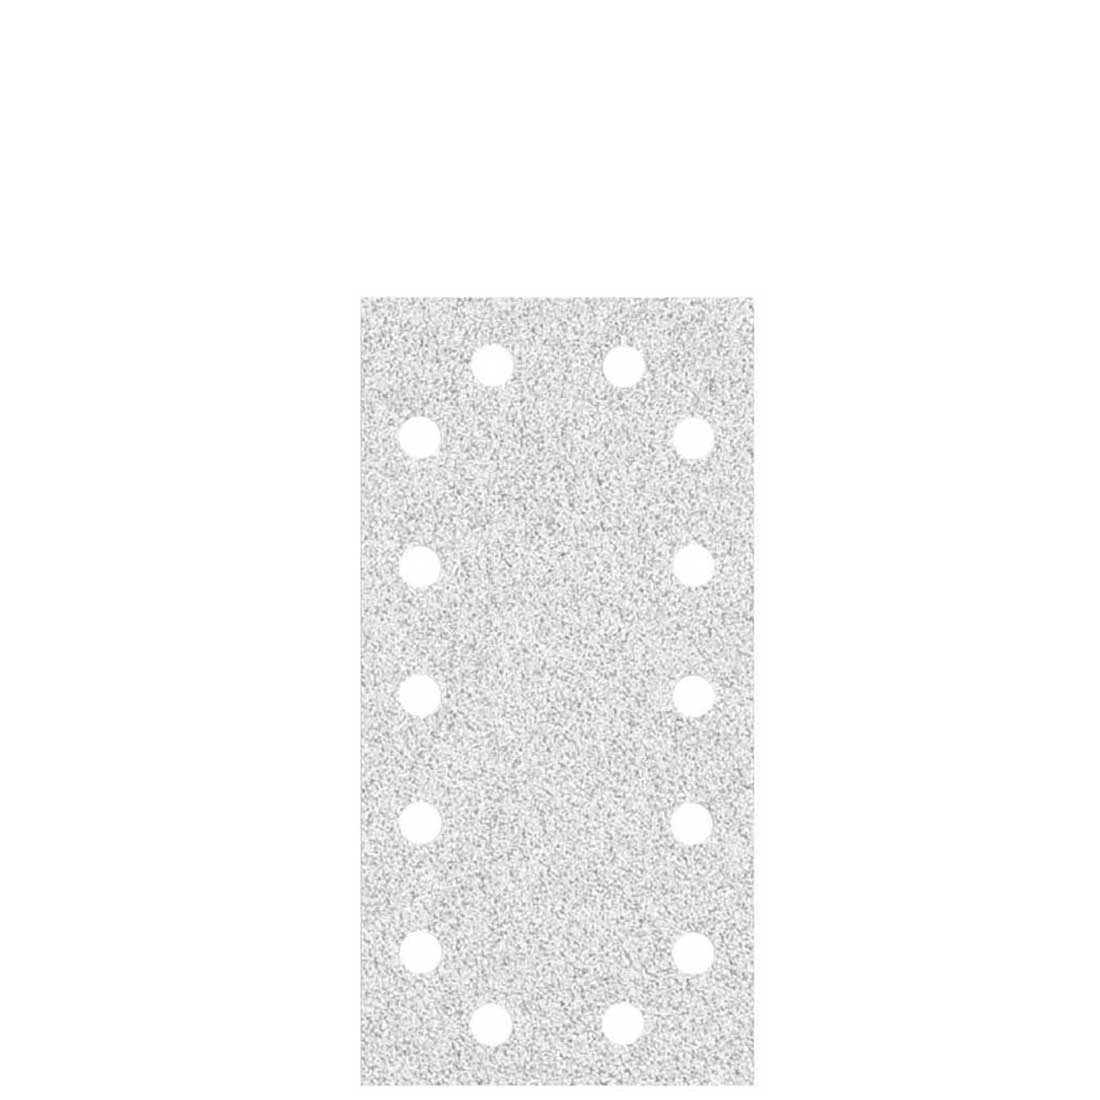 Carte abrasive velcrate MioTools per levigatrici orbitali, G40–400, 230 x 115 mm / 14 fori / corindone normale con stearato